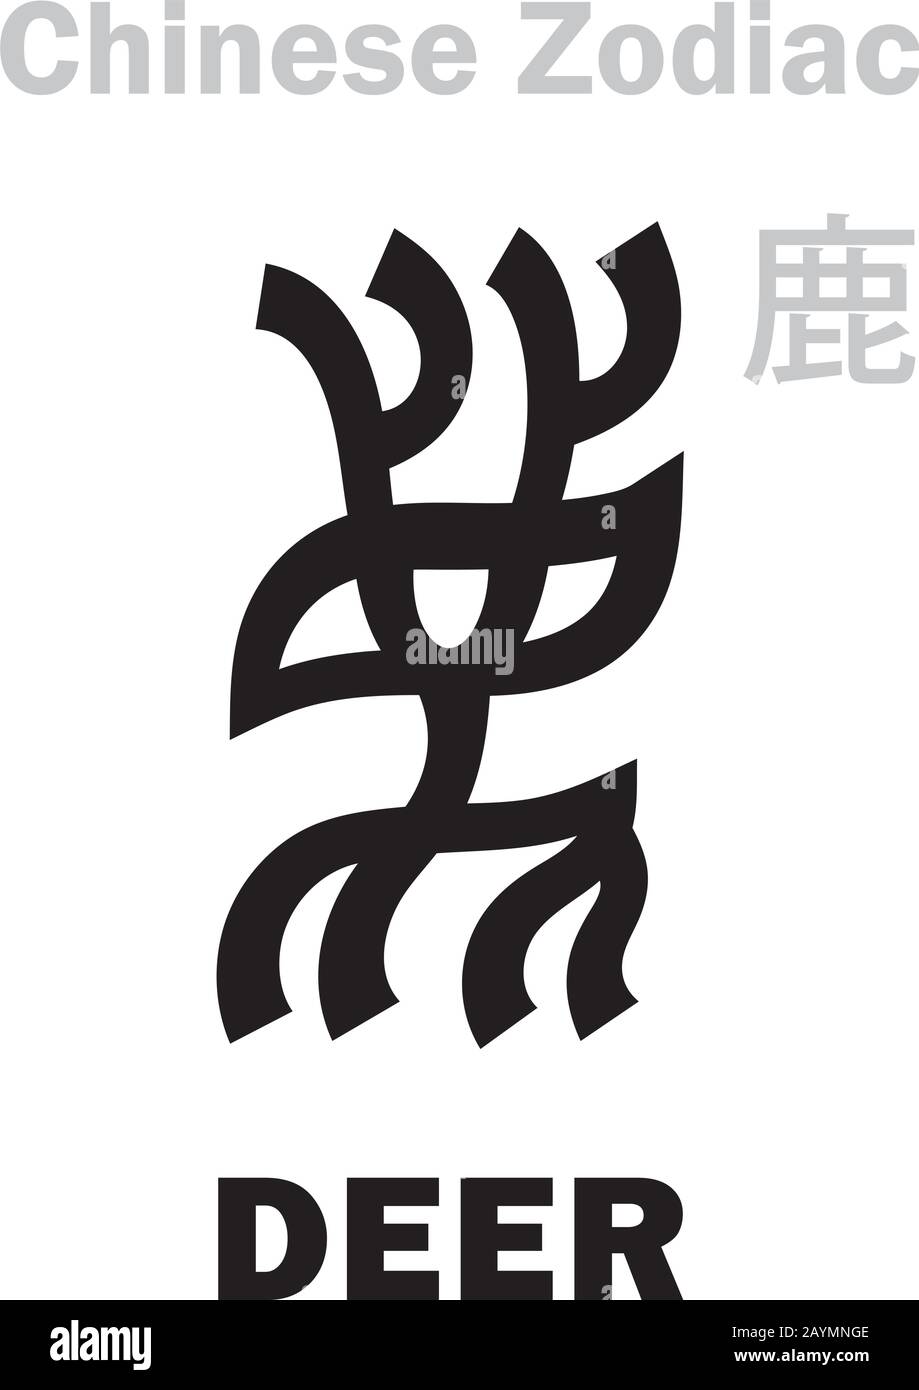 Astrologie Alphabet: Hirsche [鹿] Zeichen des chinesischen Tierkreises (auch: 12. Zeichen des birmanischen Tierkreises). Chinesisches Zeichen, hieroglyphisches Zeichen (Symbol). Stock Vektor